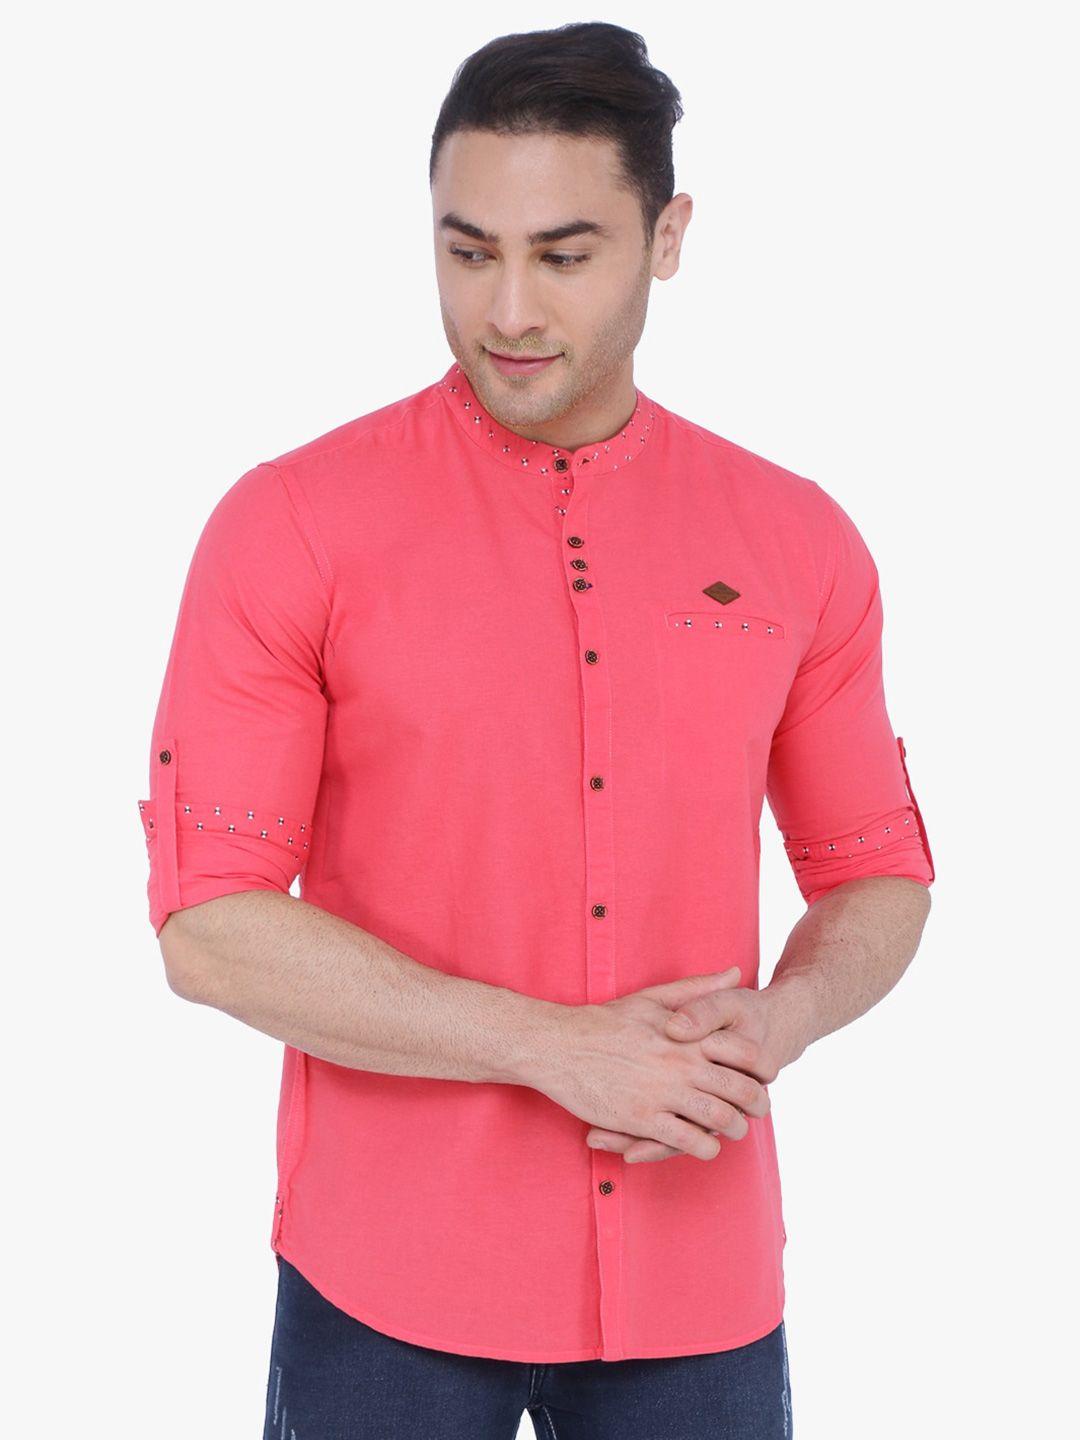 kuons avenue men smart slim fit cotton casual shirt